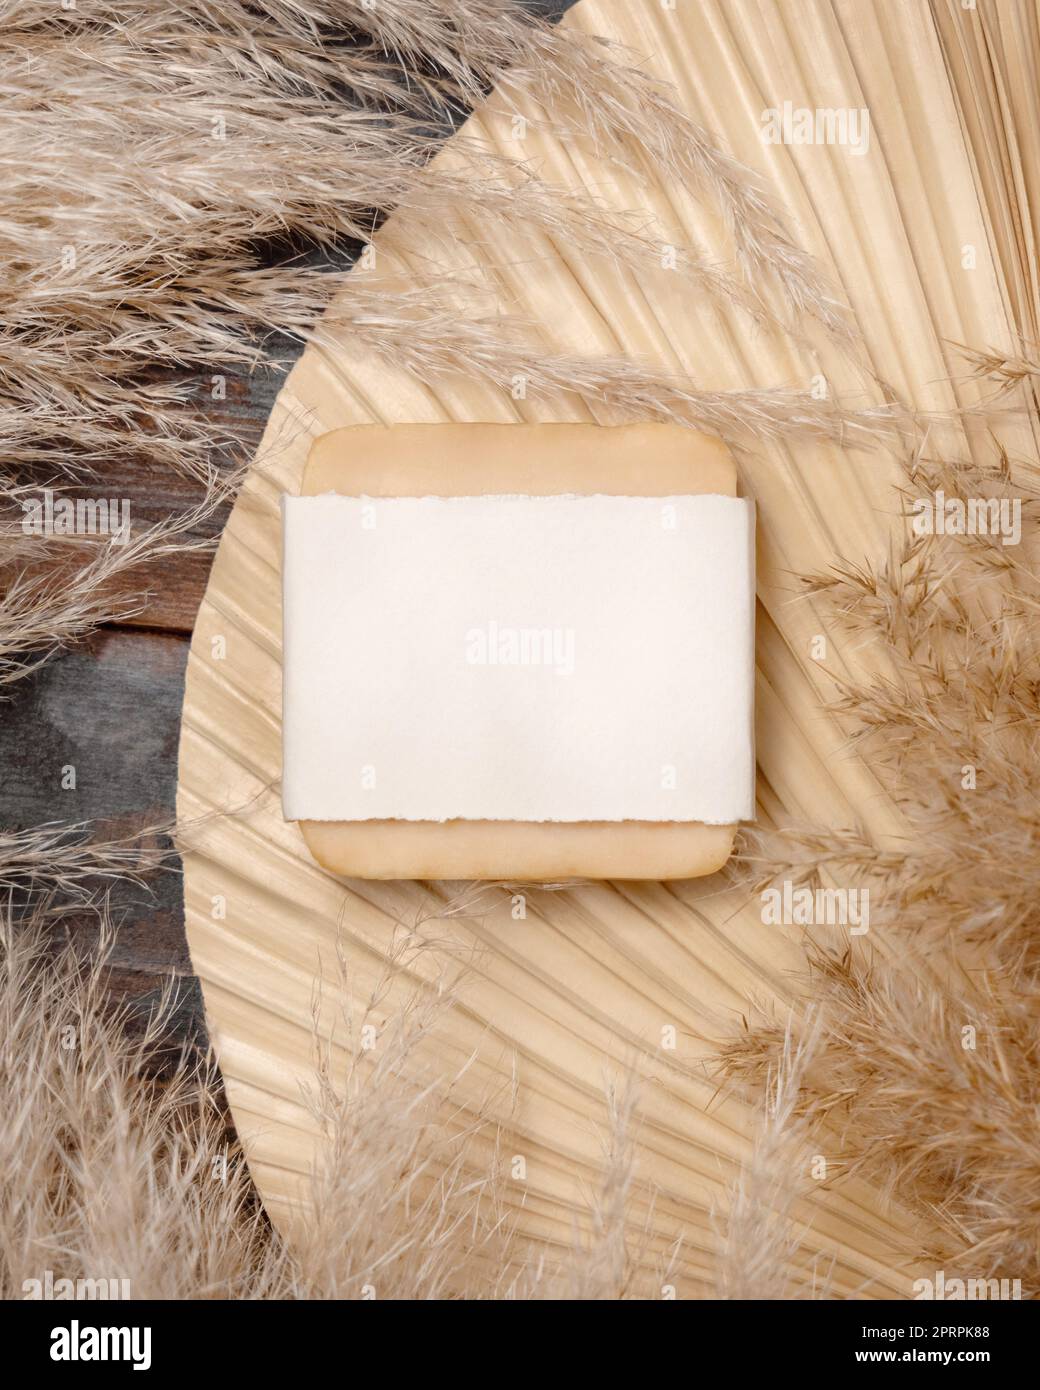 Porte-savon avec étiquette vierge sur la feuille de palmier séchée près de l'herbe de pampas vue de dessus. Maquette d'étiquette Banque D'Images